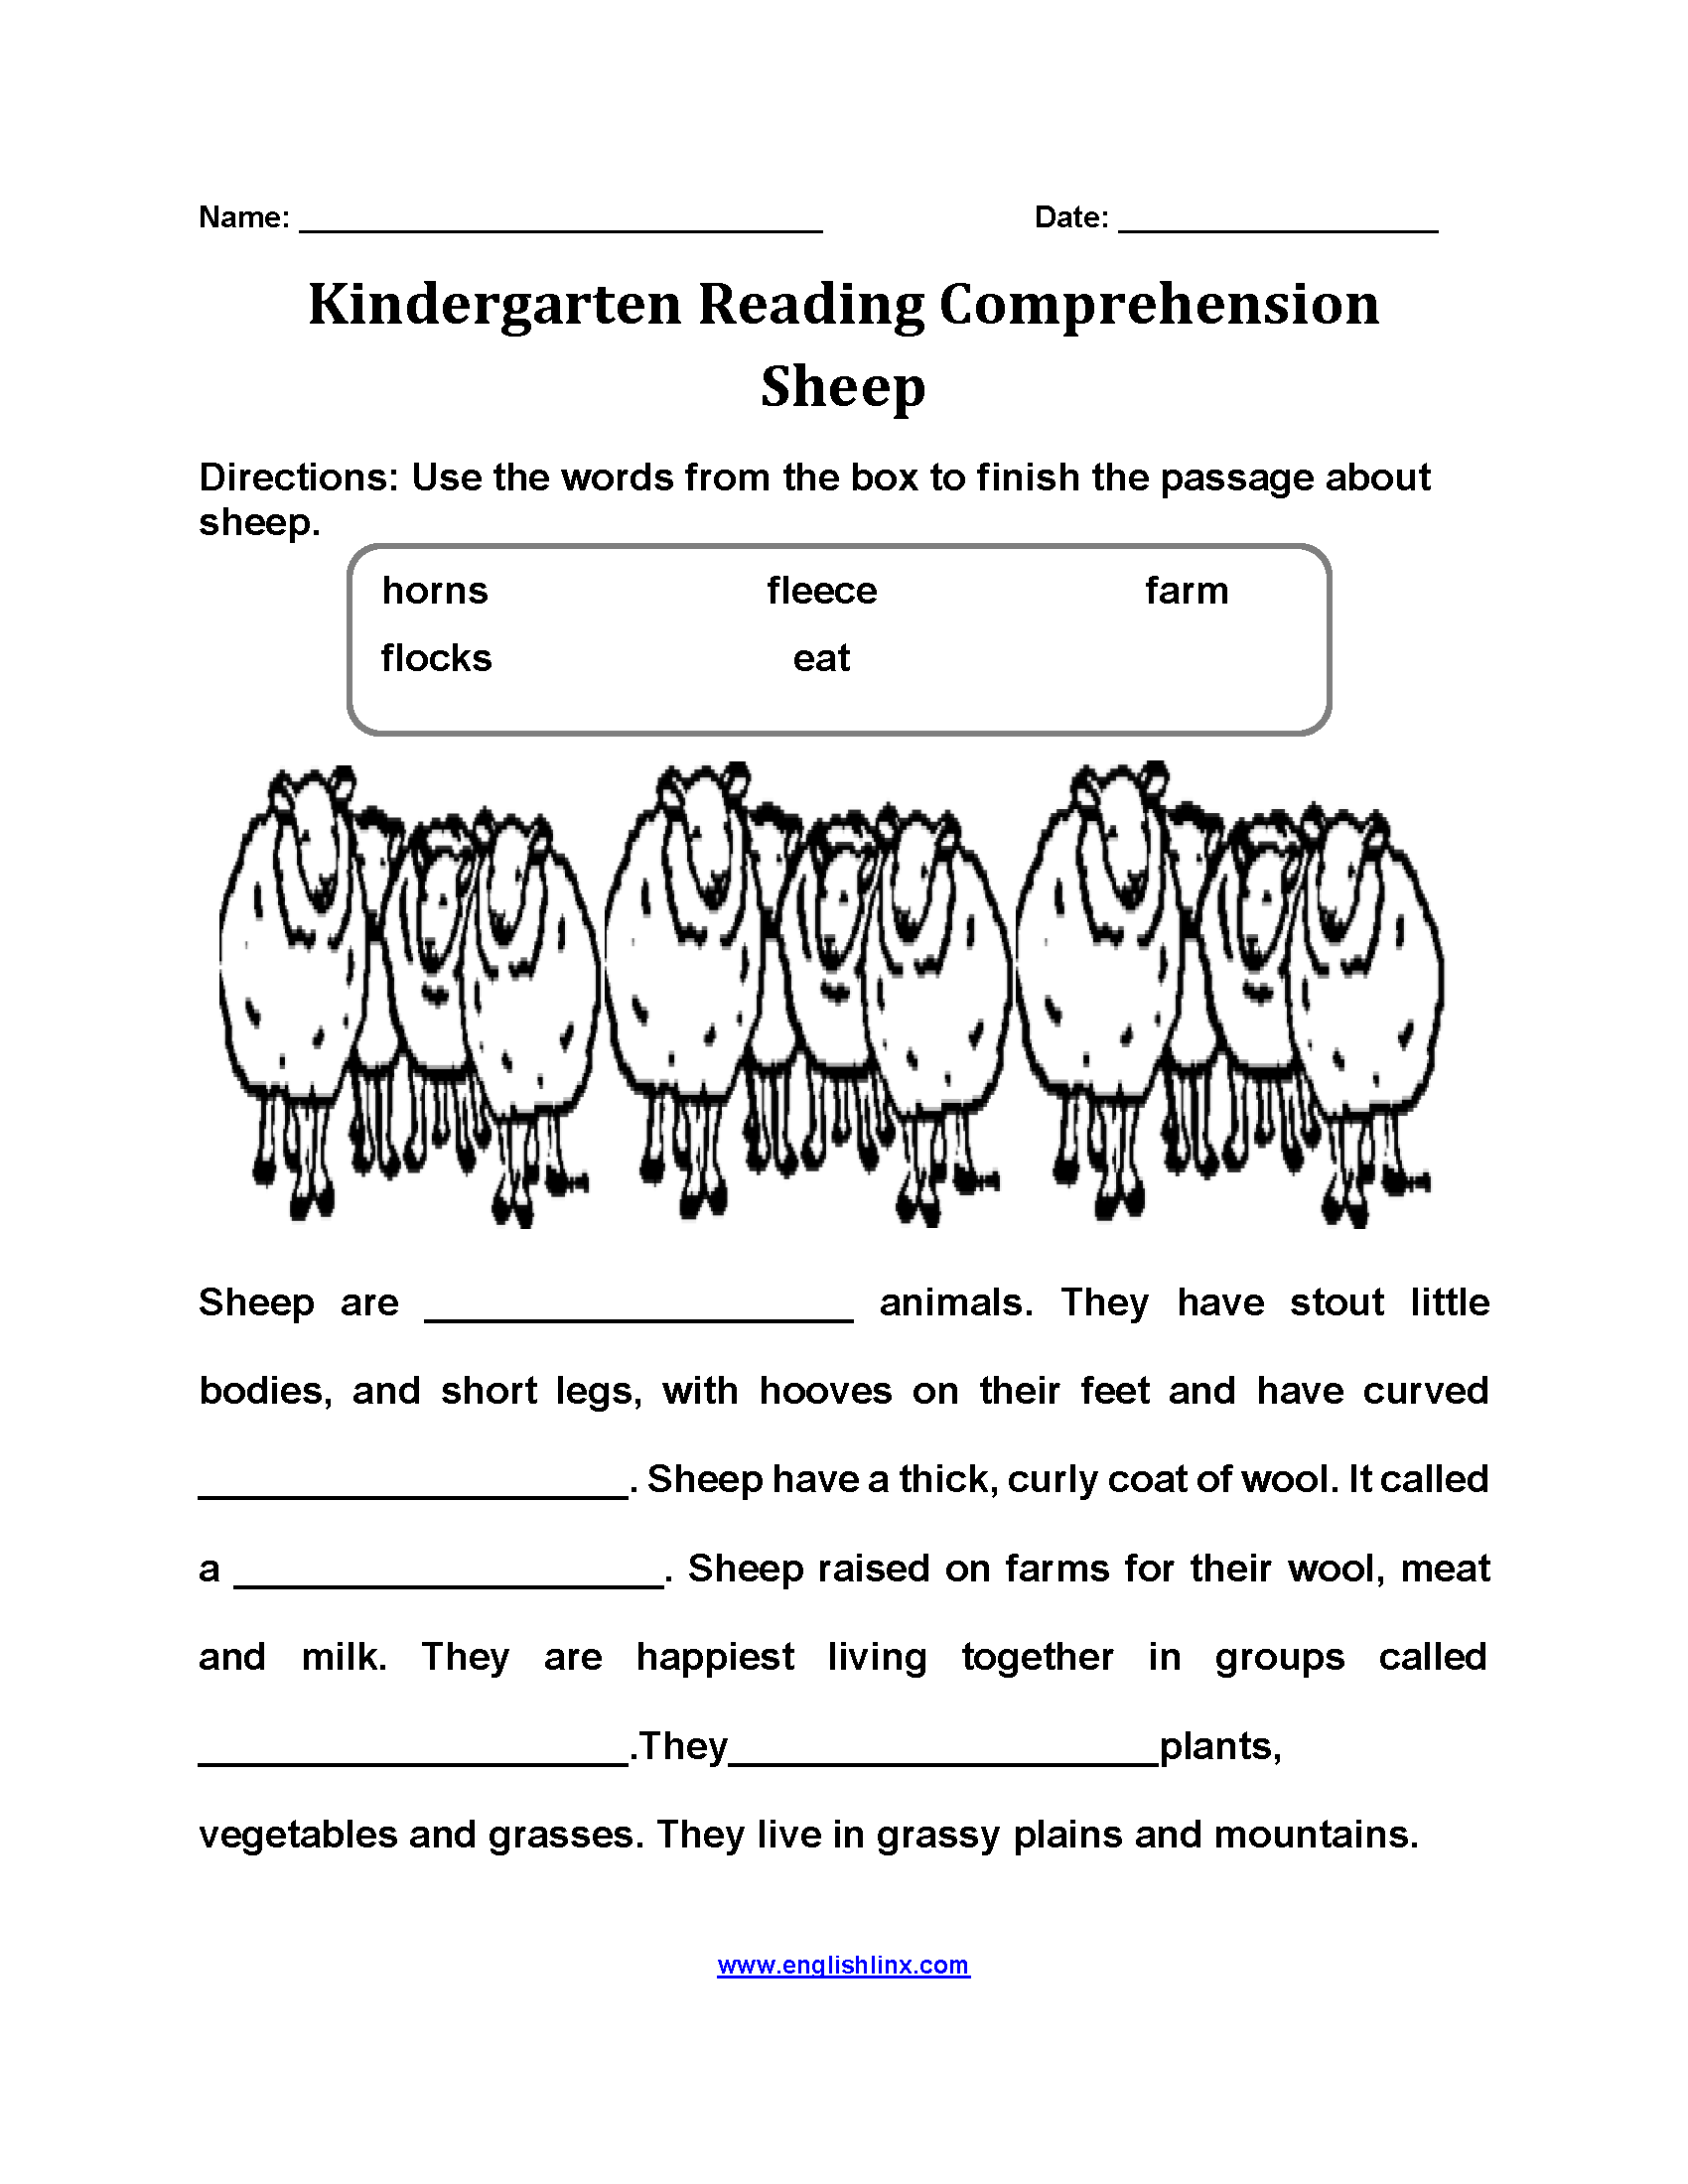 The Sheep Kindergarten Reading Comprehension Worksheets